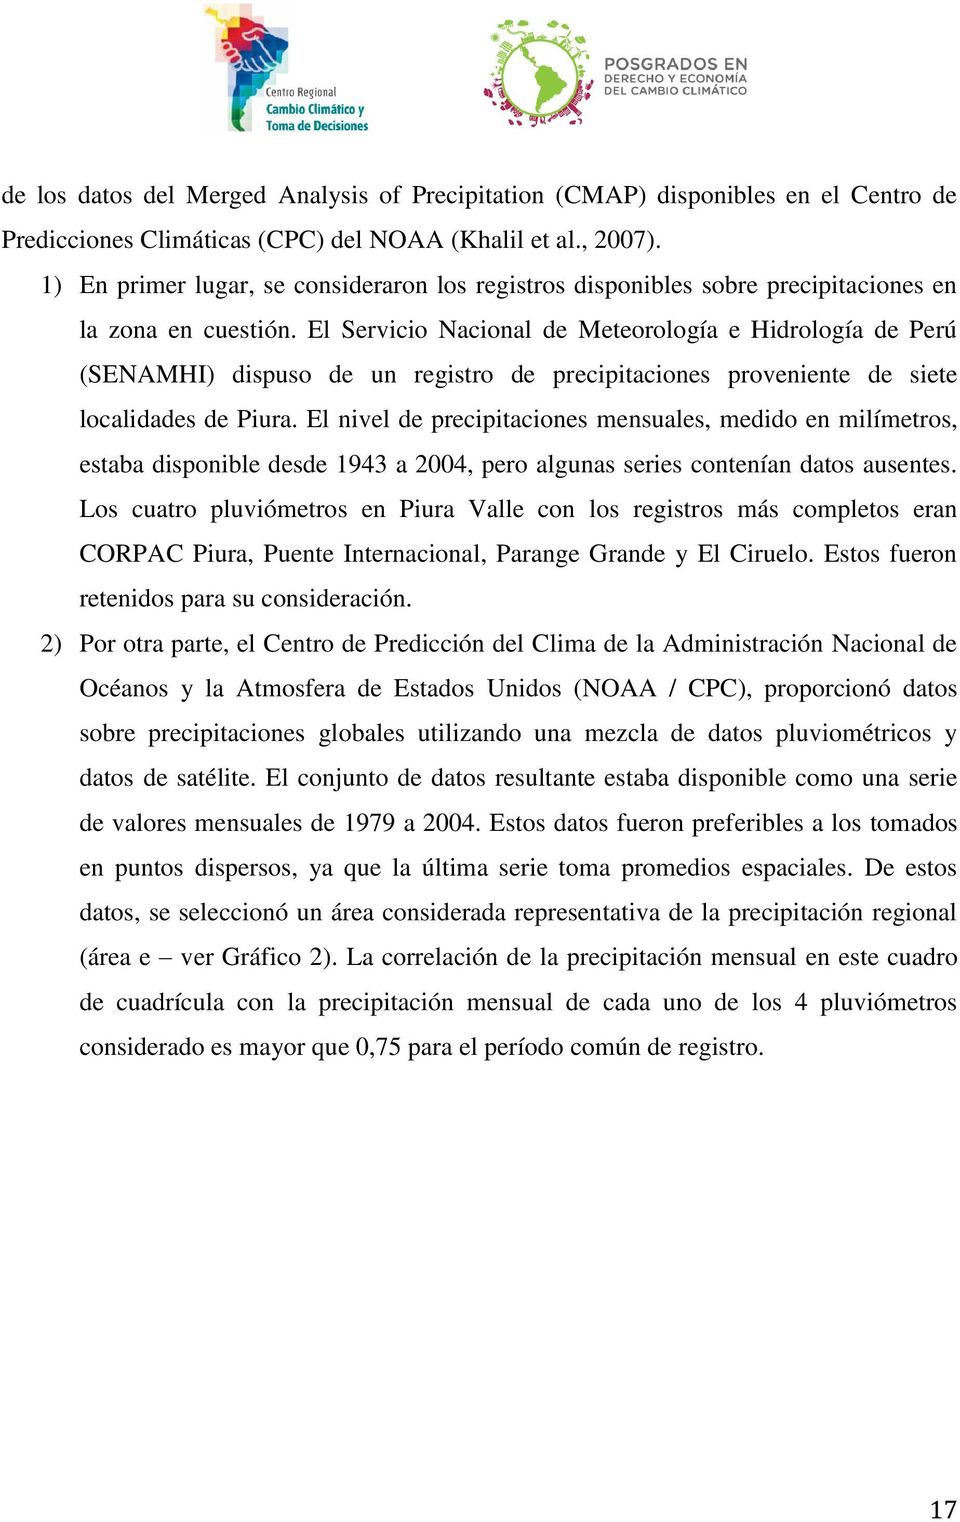 El Servicio Nacional de Meteorología e Hidrología de Perú (SENAMHI) dispuso de un registro de precipitaciones proveniente de siete localidades de Piura.